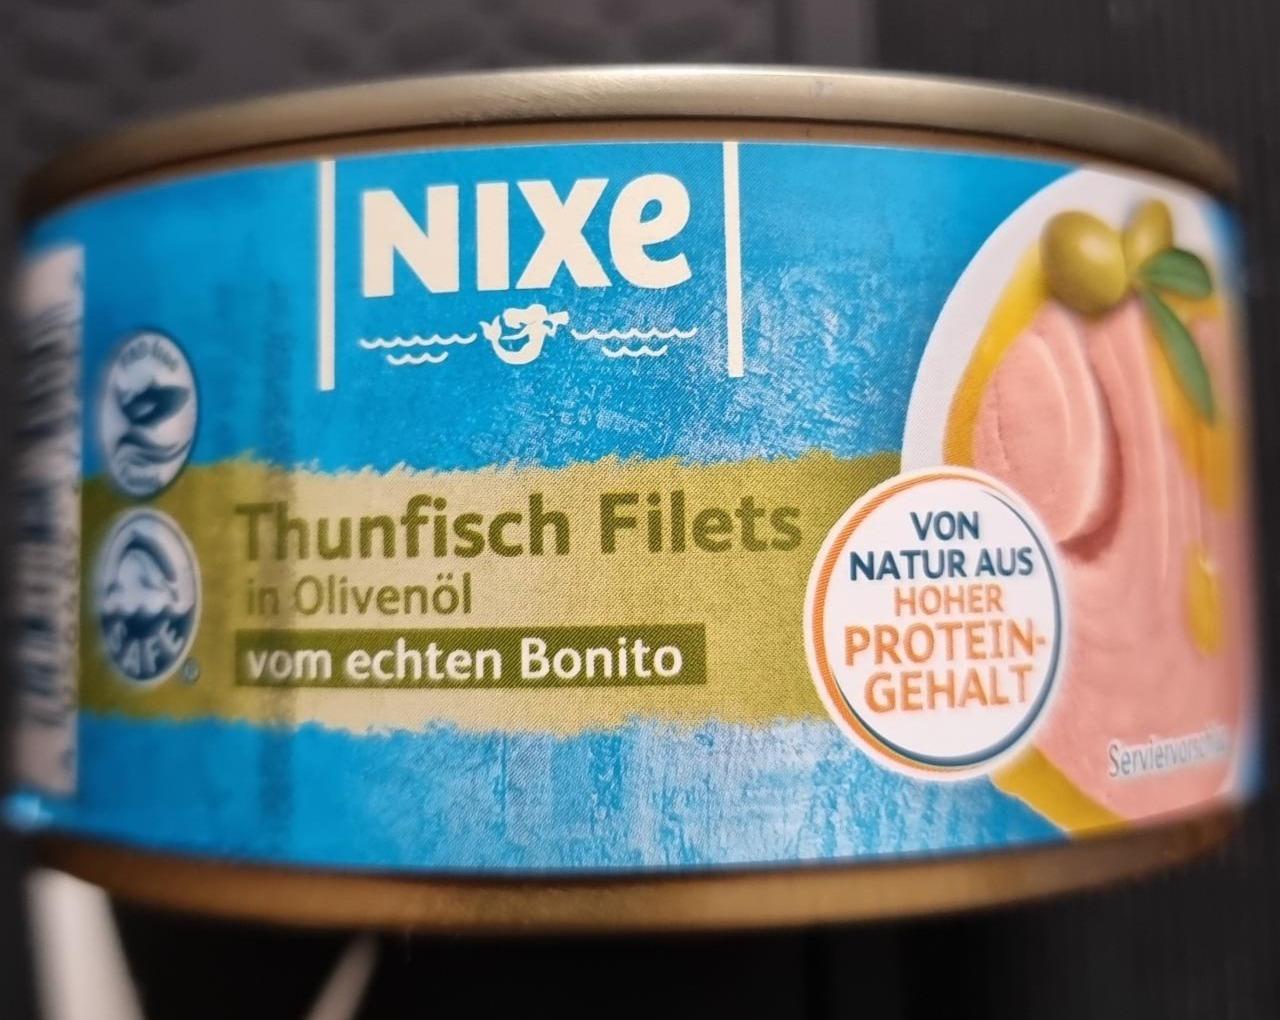 Fotografie - Thunfisch Filets in Olivenöl vom echten Bonito Nixe